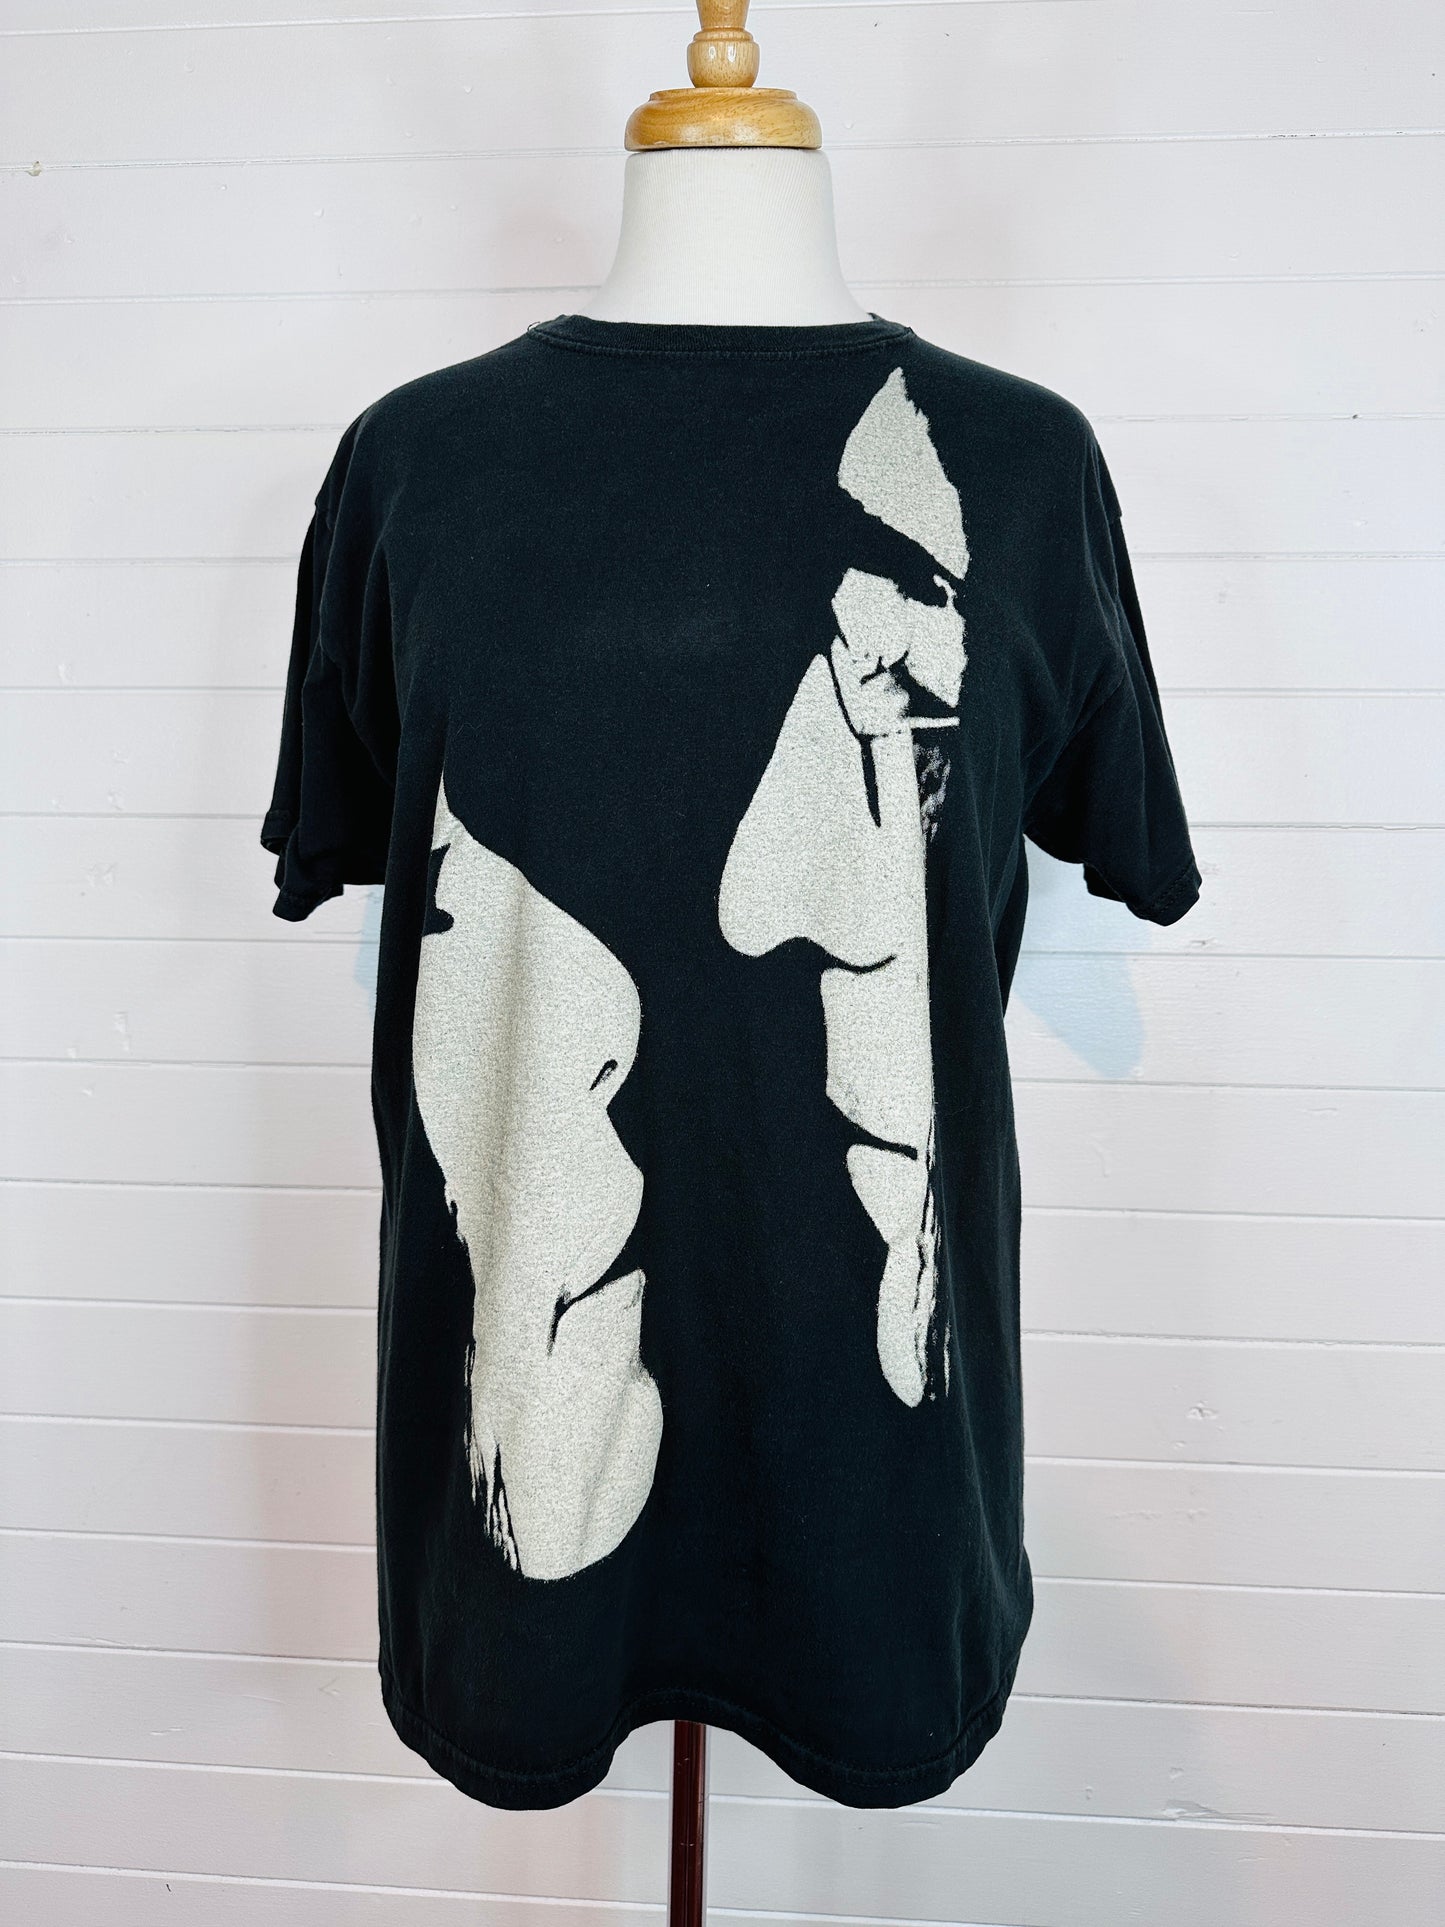 Vintage John Lennon and Yoko Ono Faces Band T-Shirt